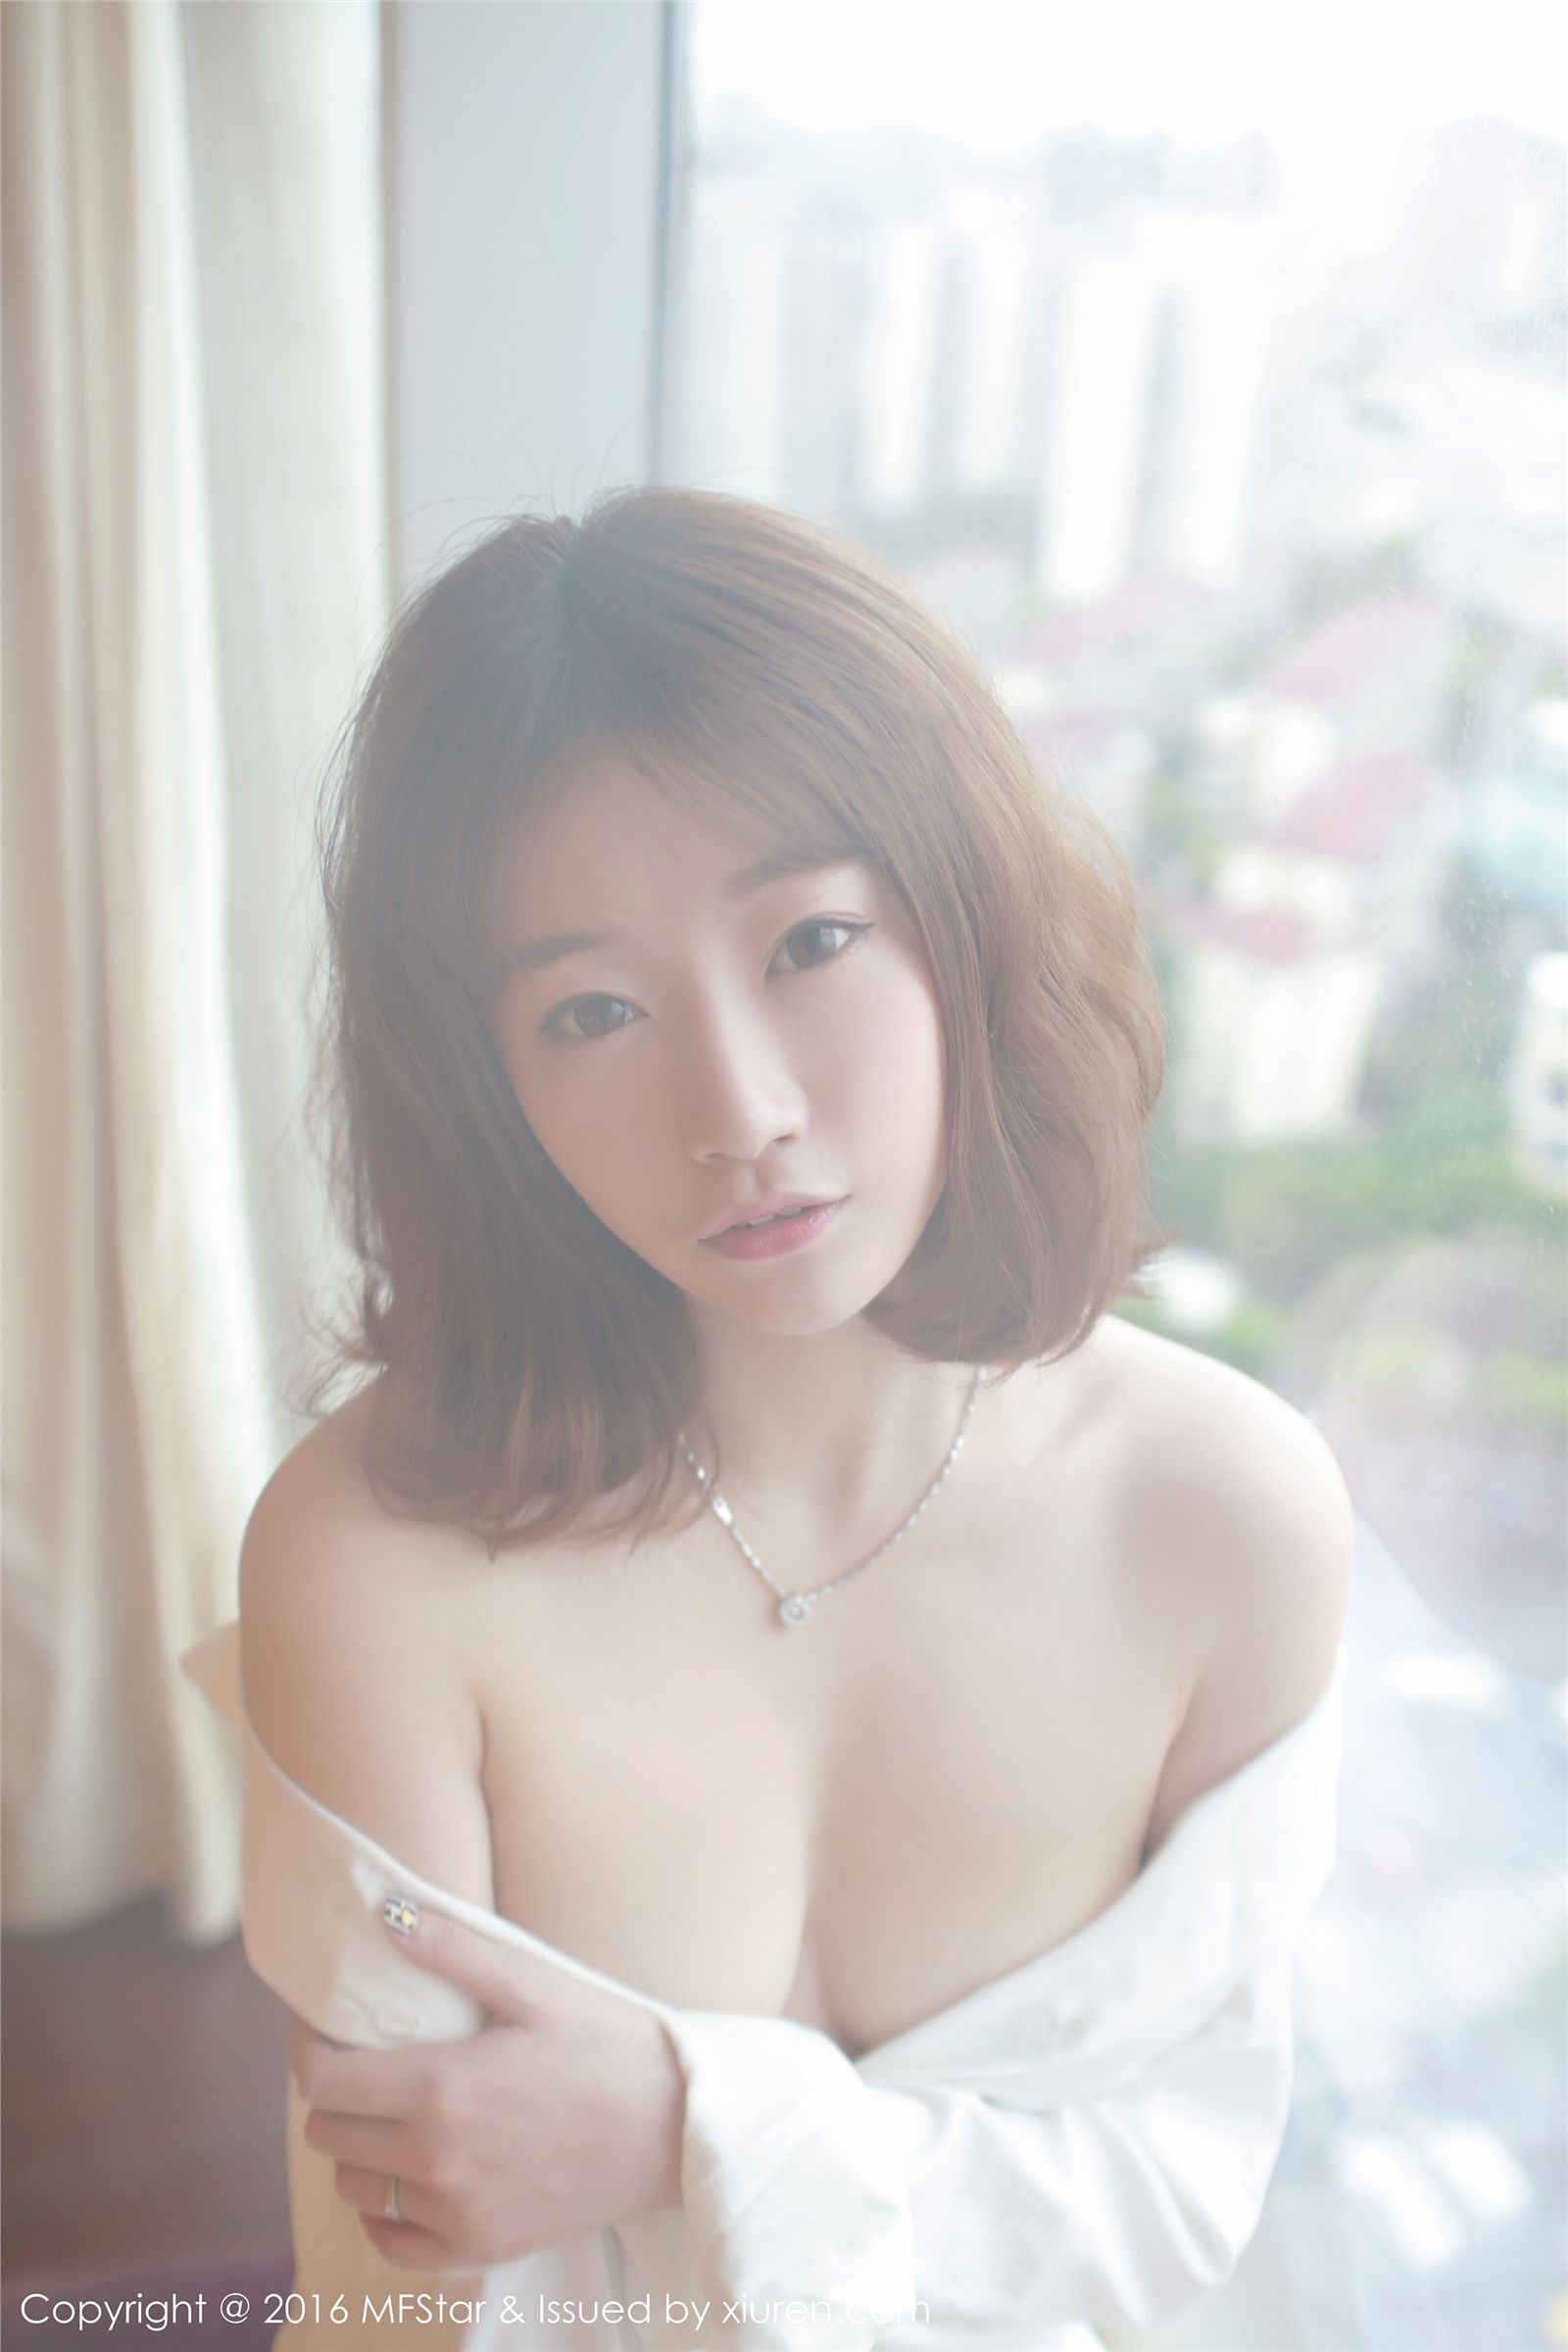 [mfstar model college] 2016.08.16 vol.066 Chen Siyu mango